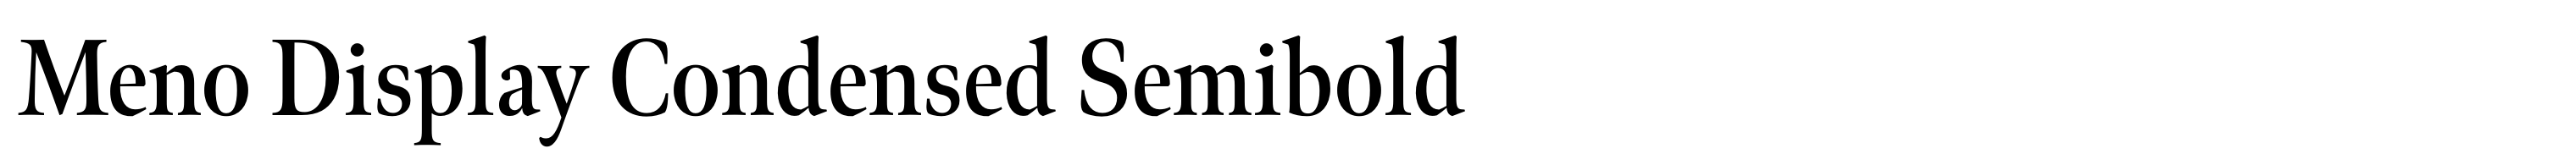 Meno Display Condensed Semibold